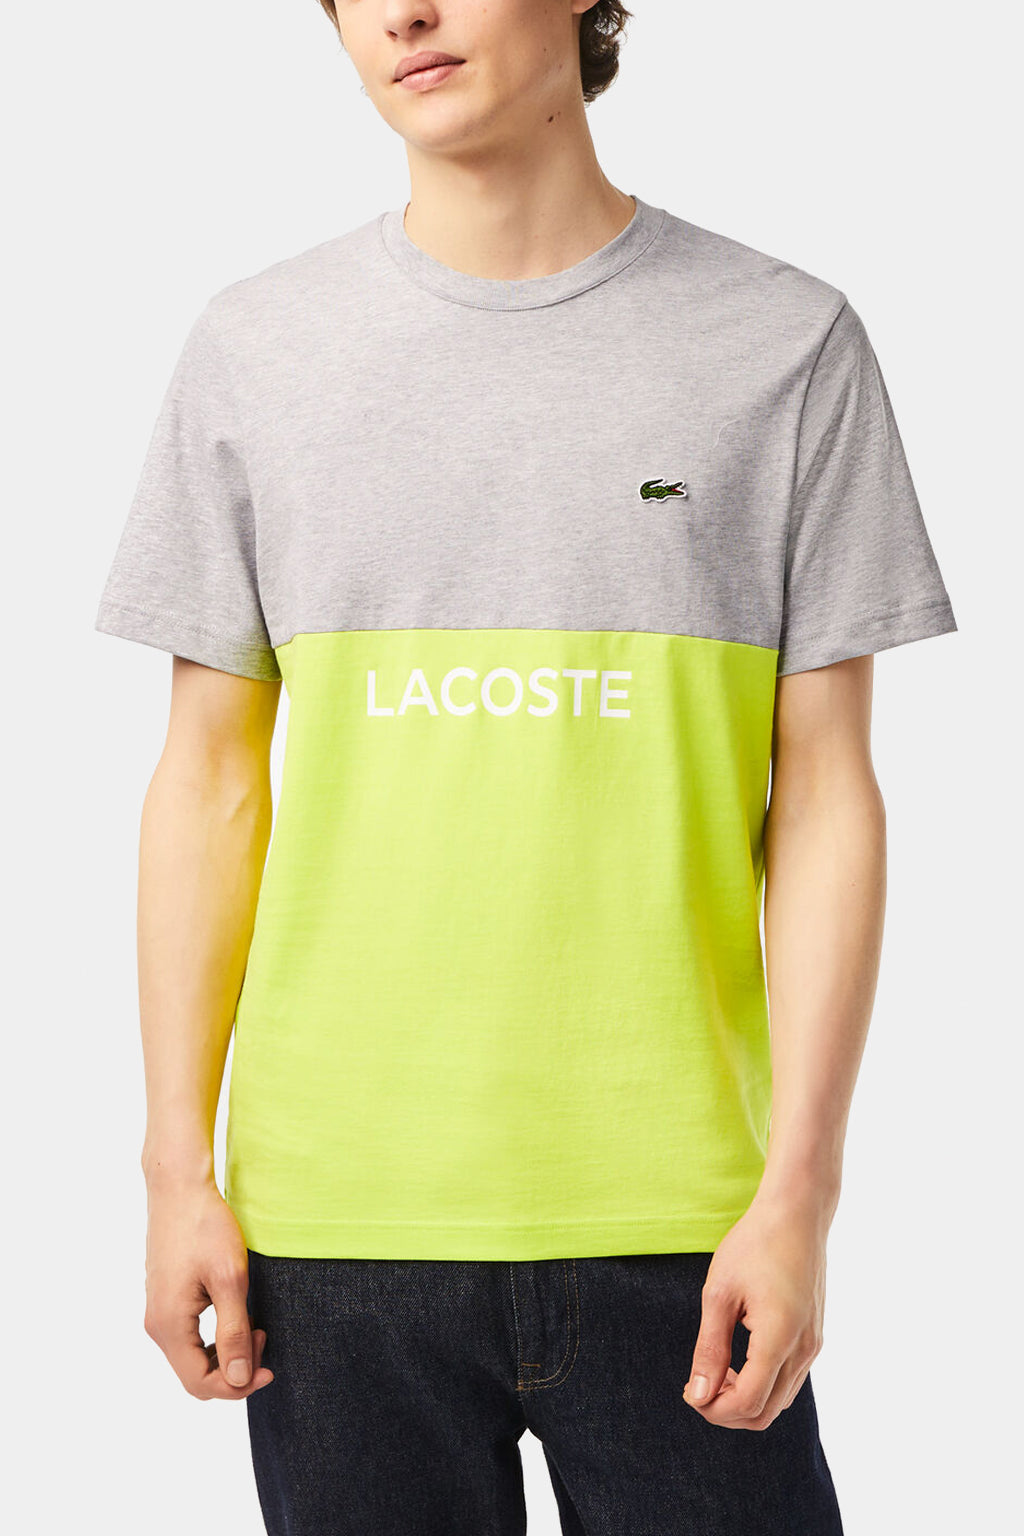 Lacoste - Men’s Lacoste Regular Fit Cotton Jersey Colourblock T-shirt